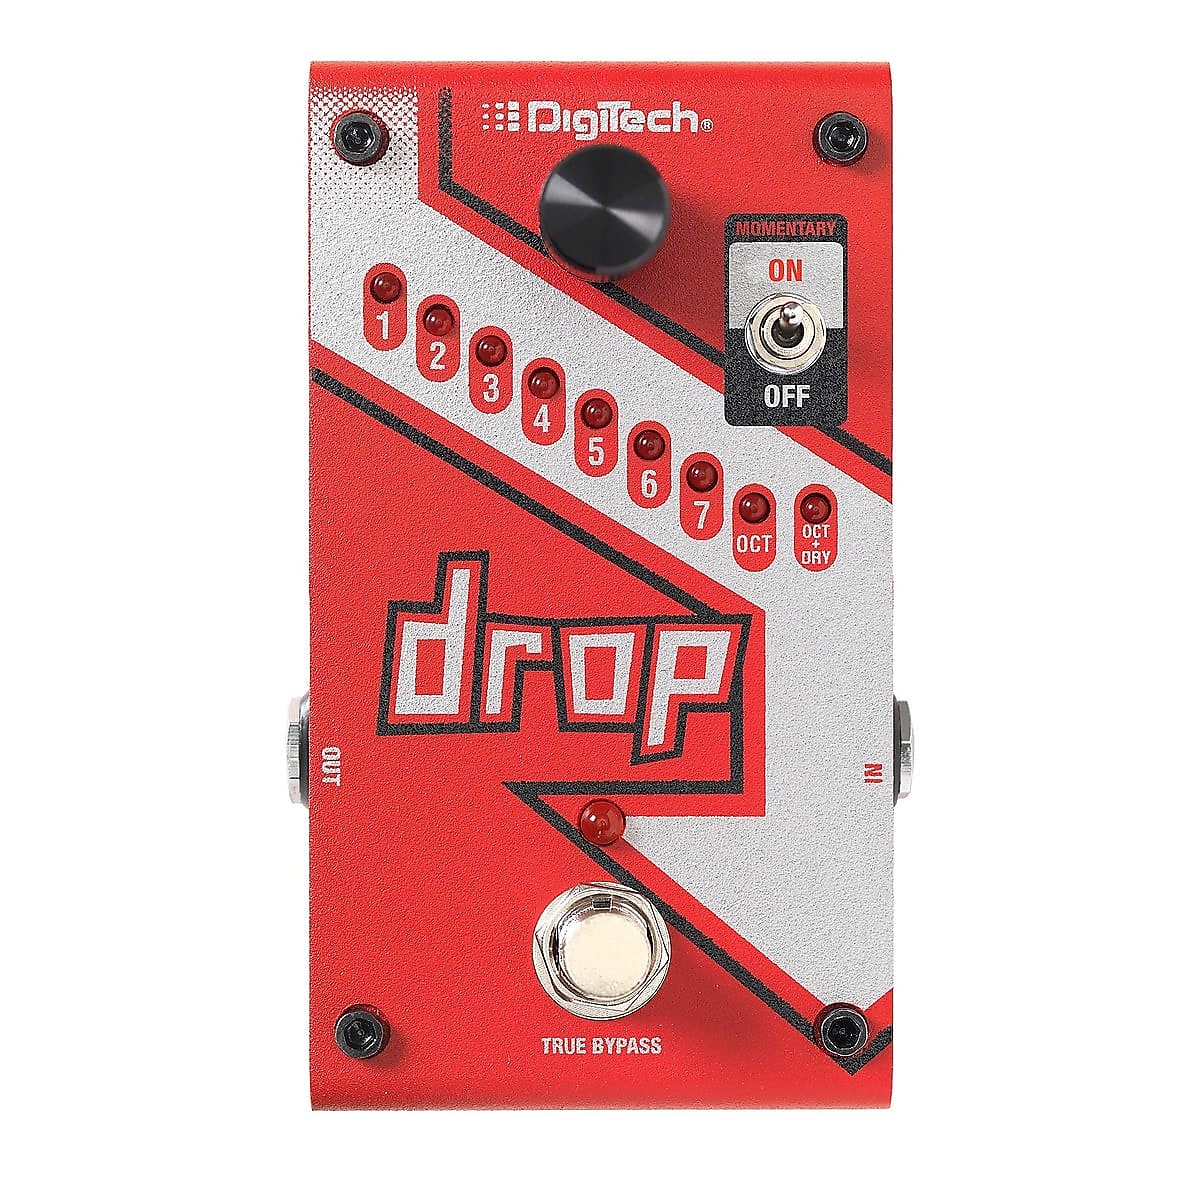 Digitech Drop | Reverb